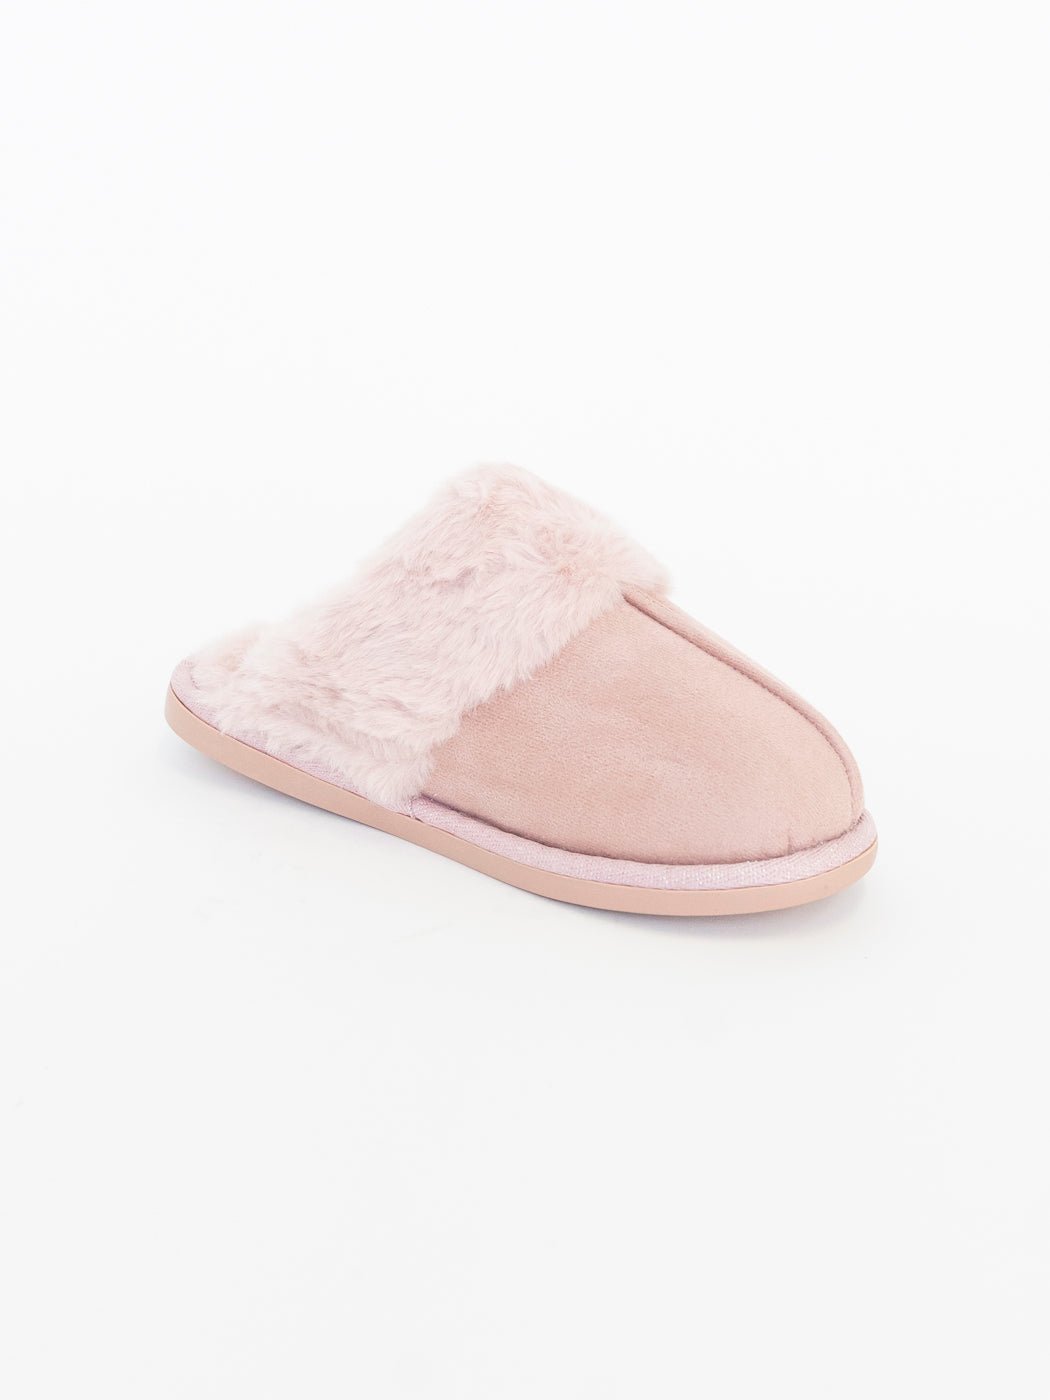 Joyce slippers misty rose - Online-Mode